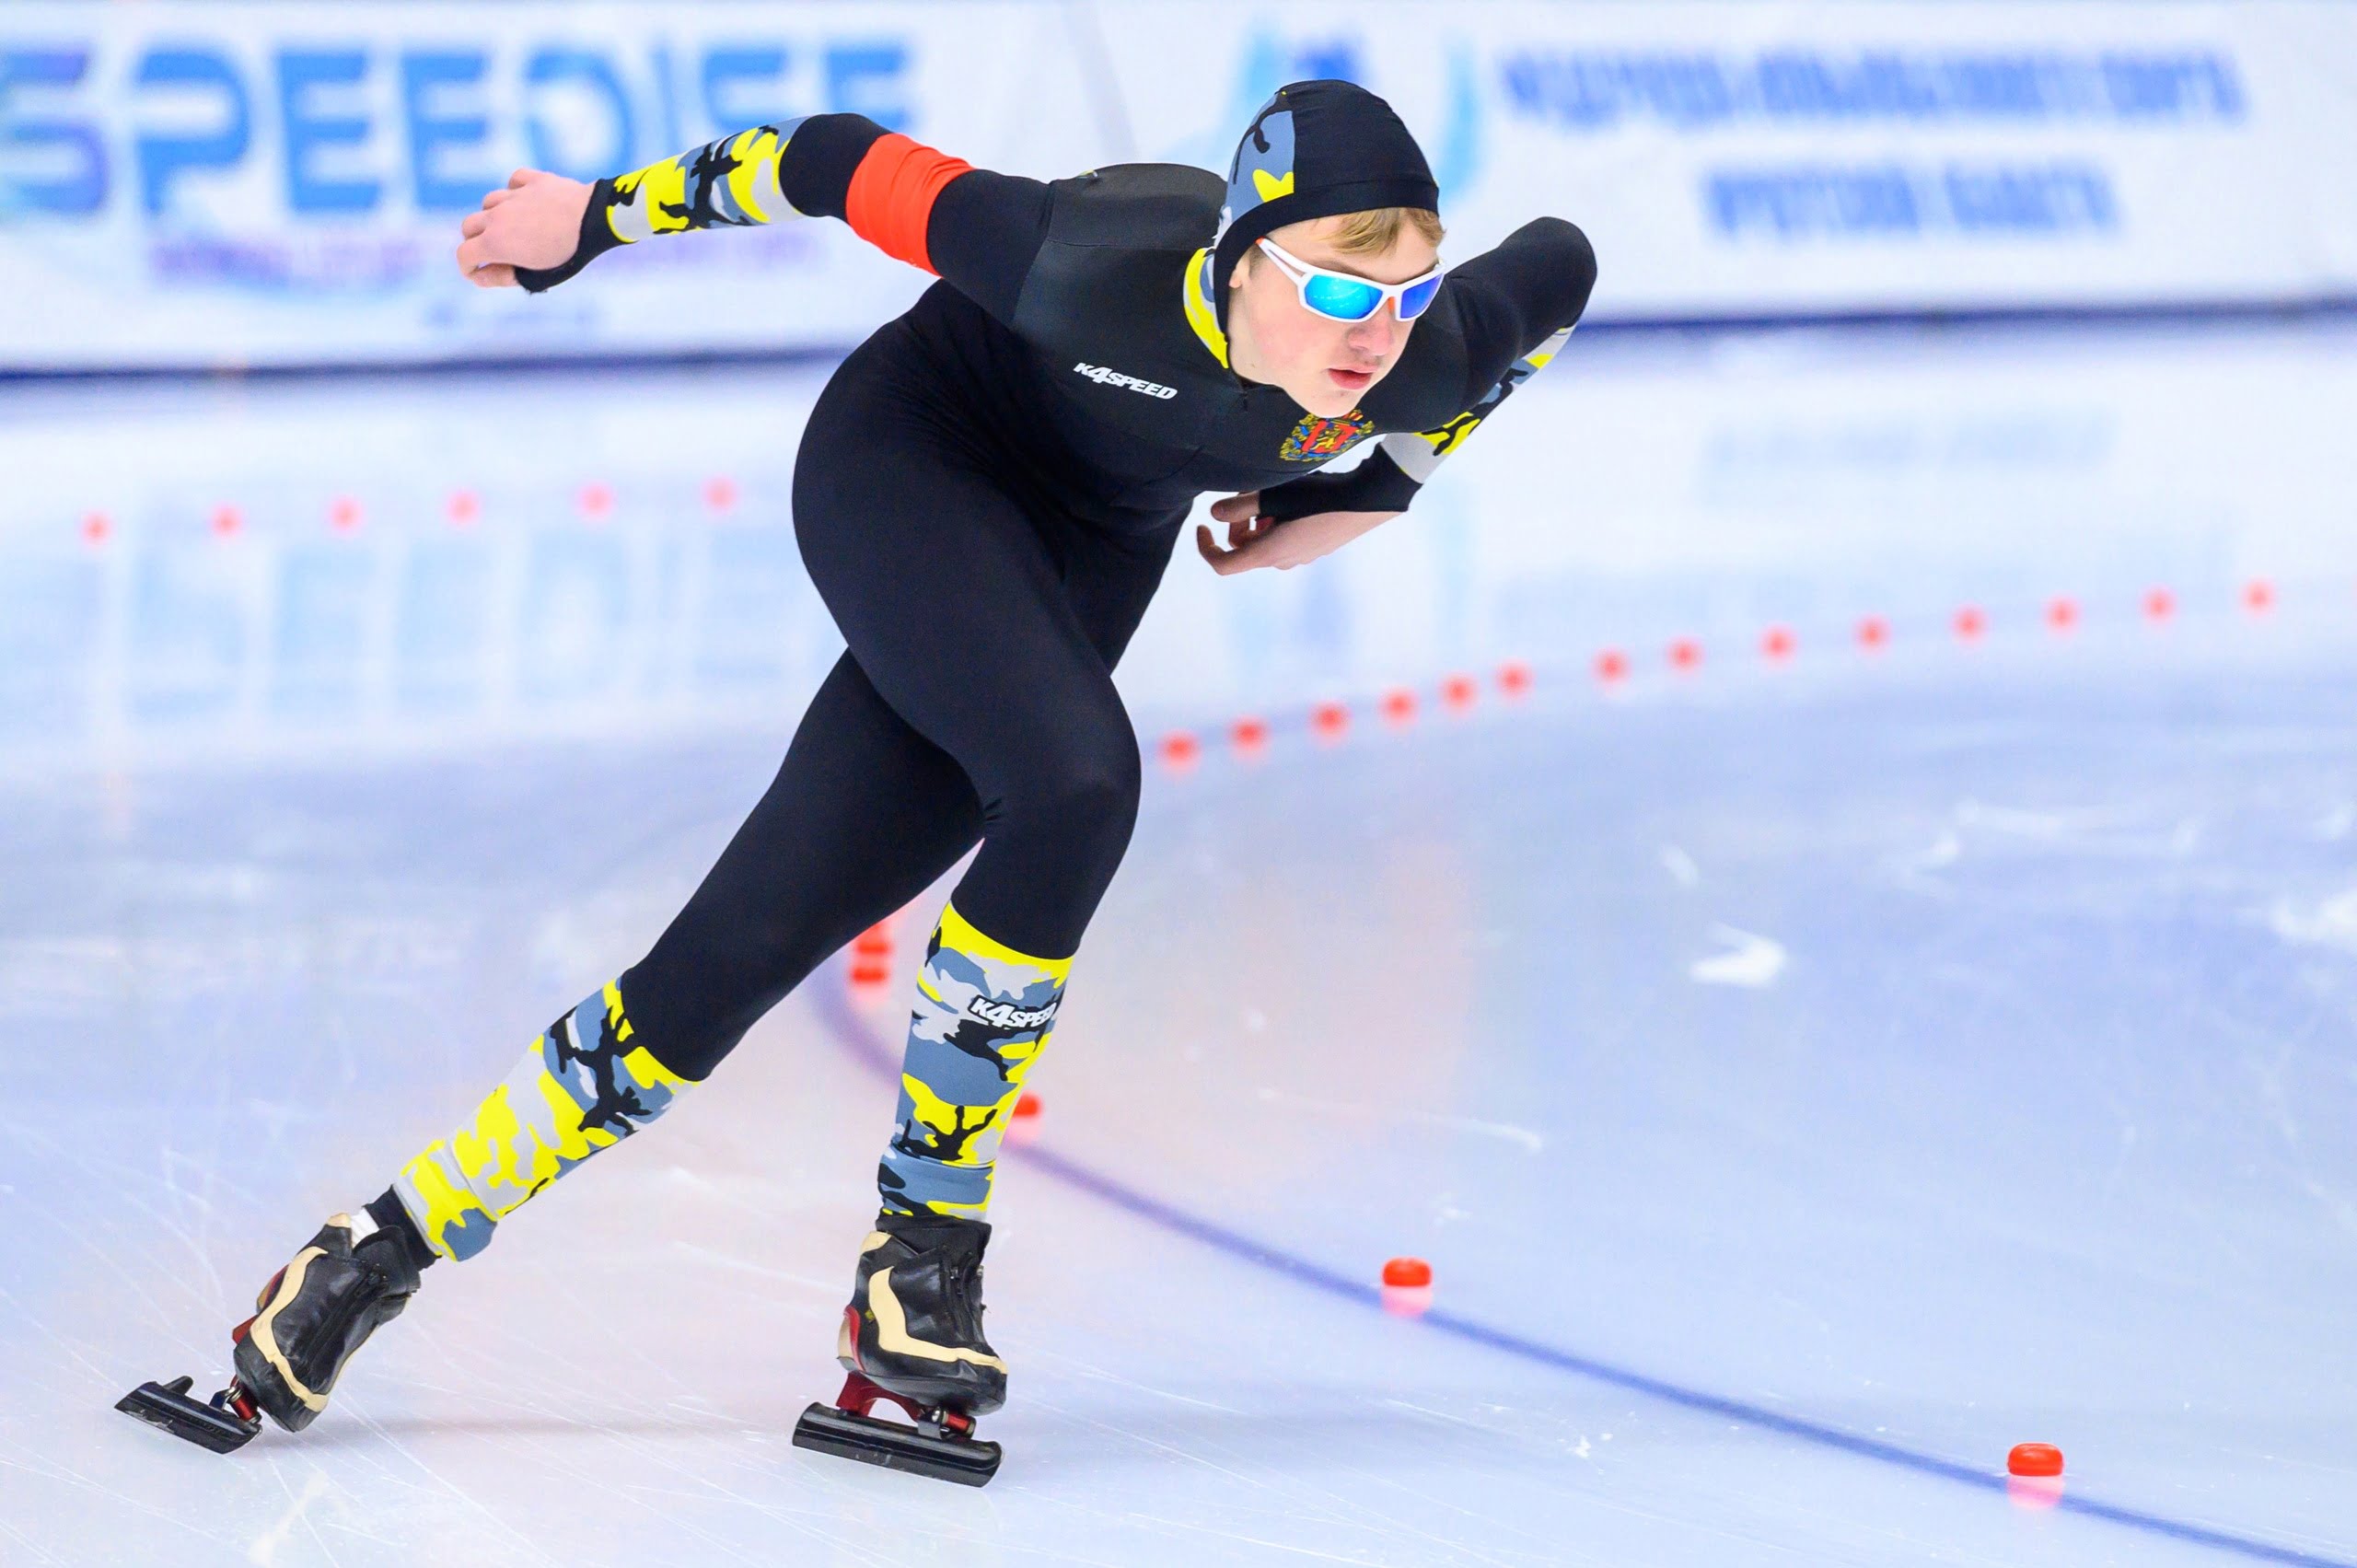 Первый этап первенства Сибири по конькобежному спорту пройдет в Иркутске 13-14 декабря